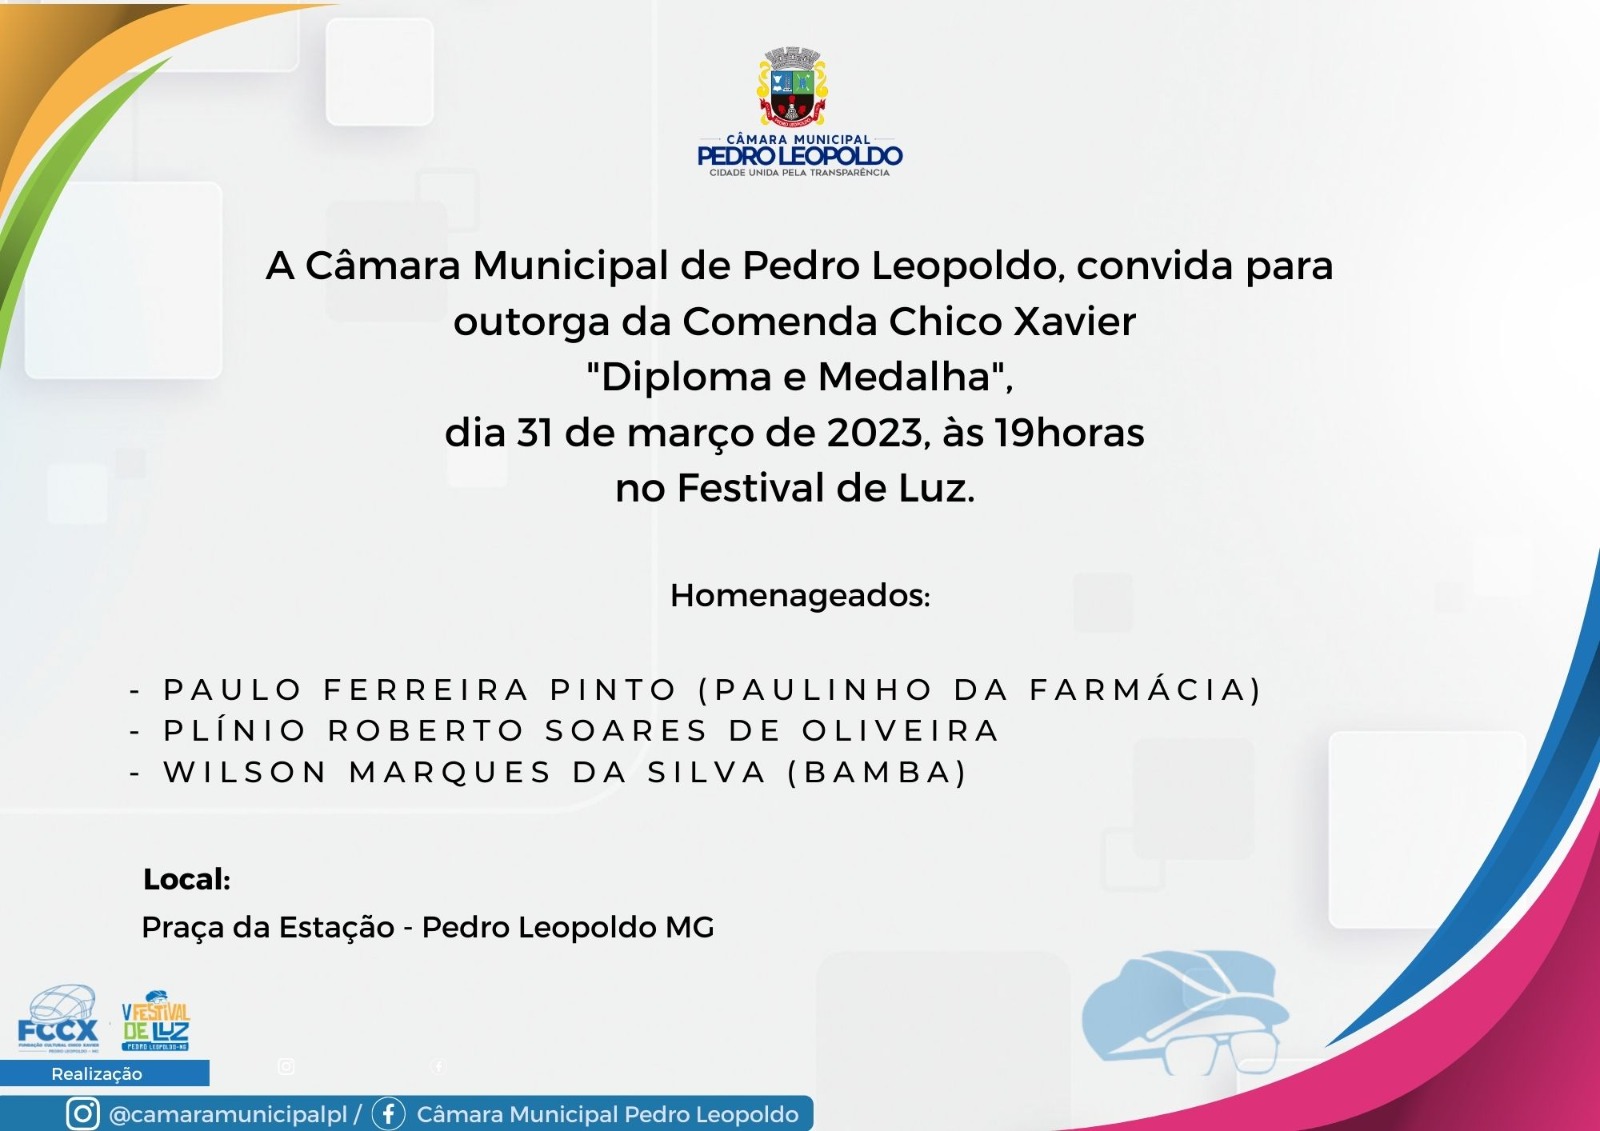 CMPL convida para outorga da Comenda Chico Xavier "Diploma e Medalha"